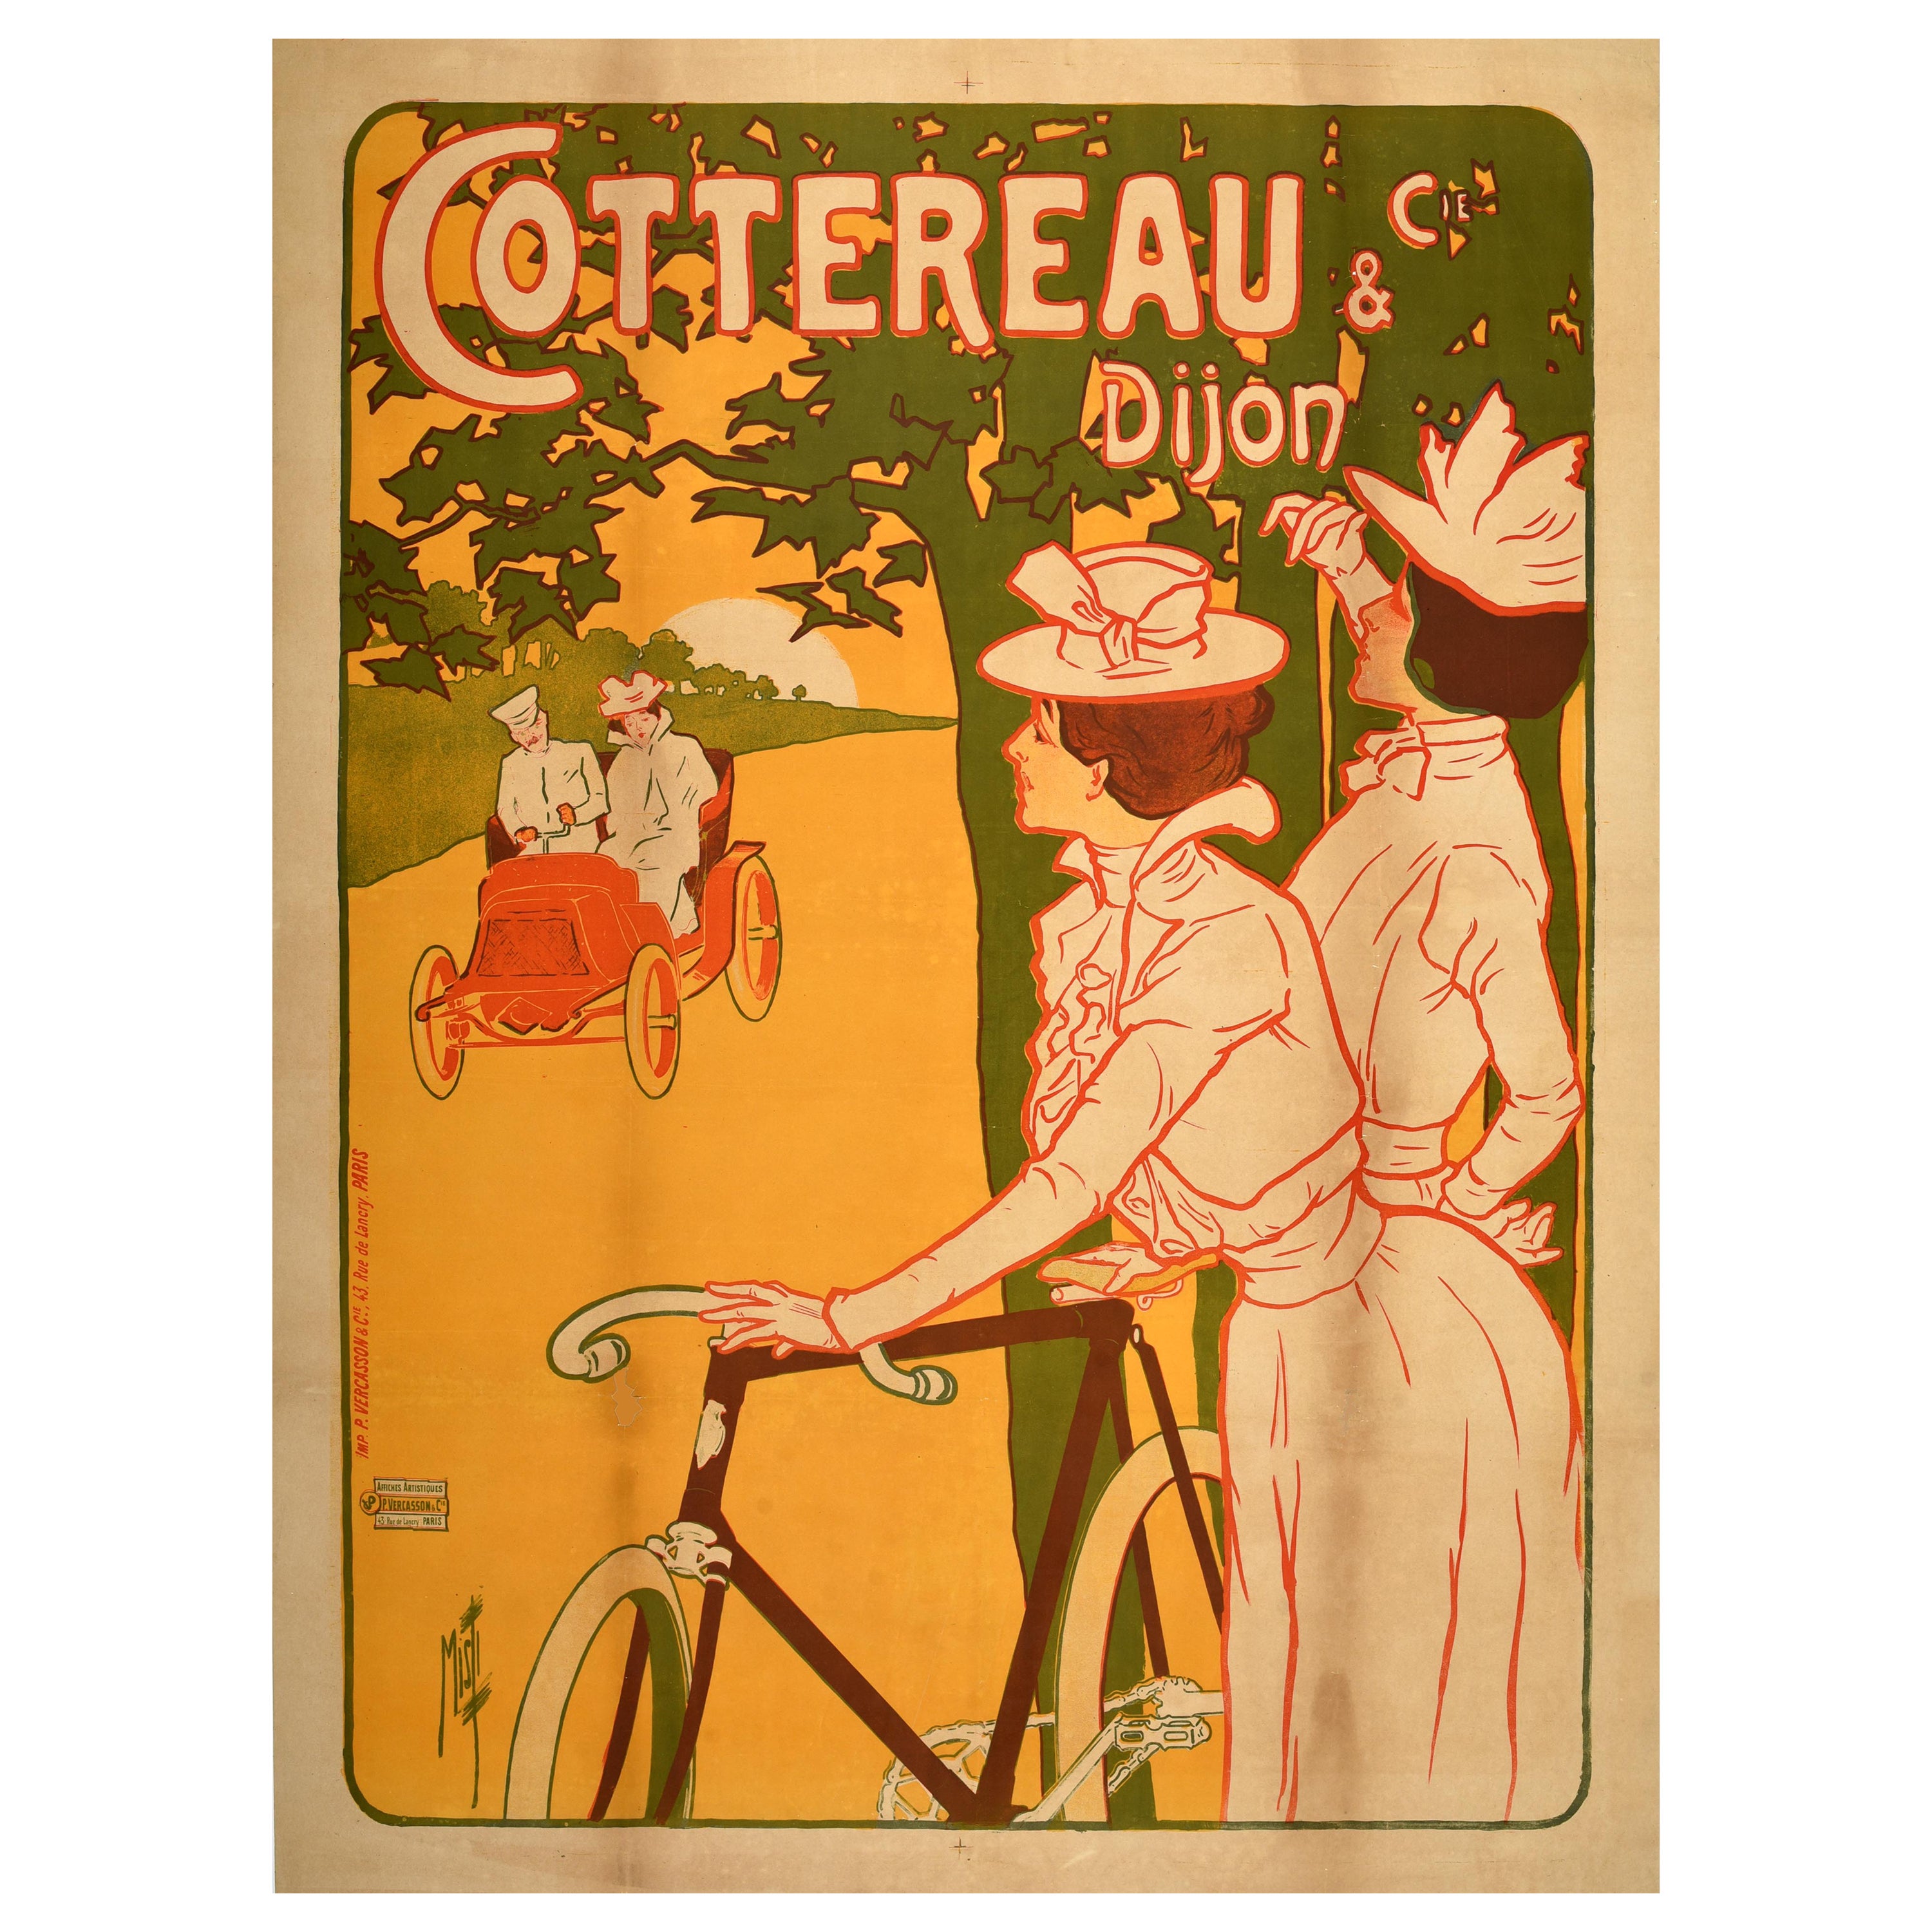 Original Antikes französisches Werbeplakat, Cottereau Misti Dijon, Belle Epoque, Belle Epoque